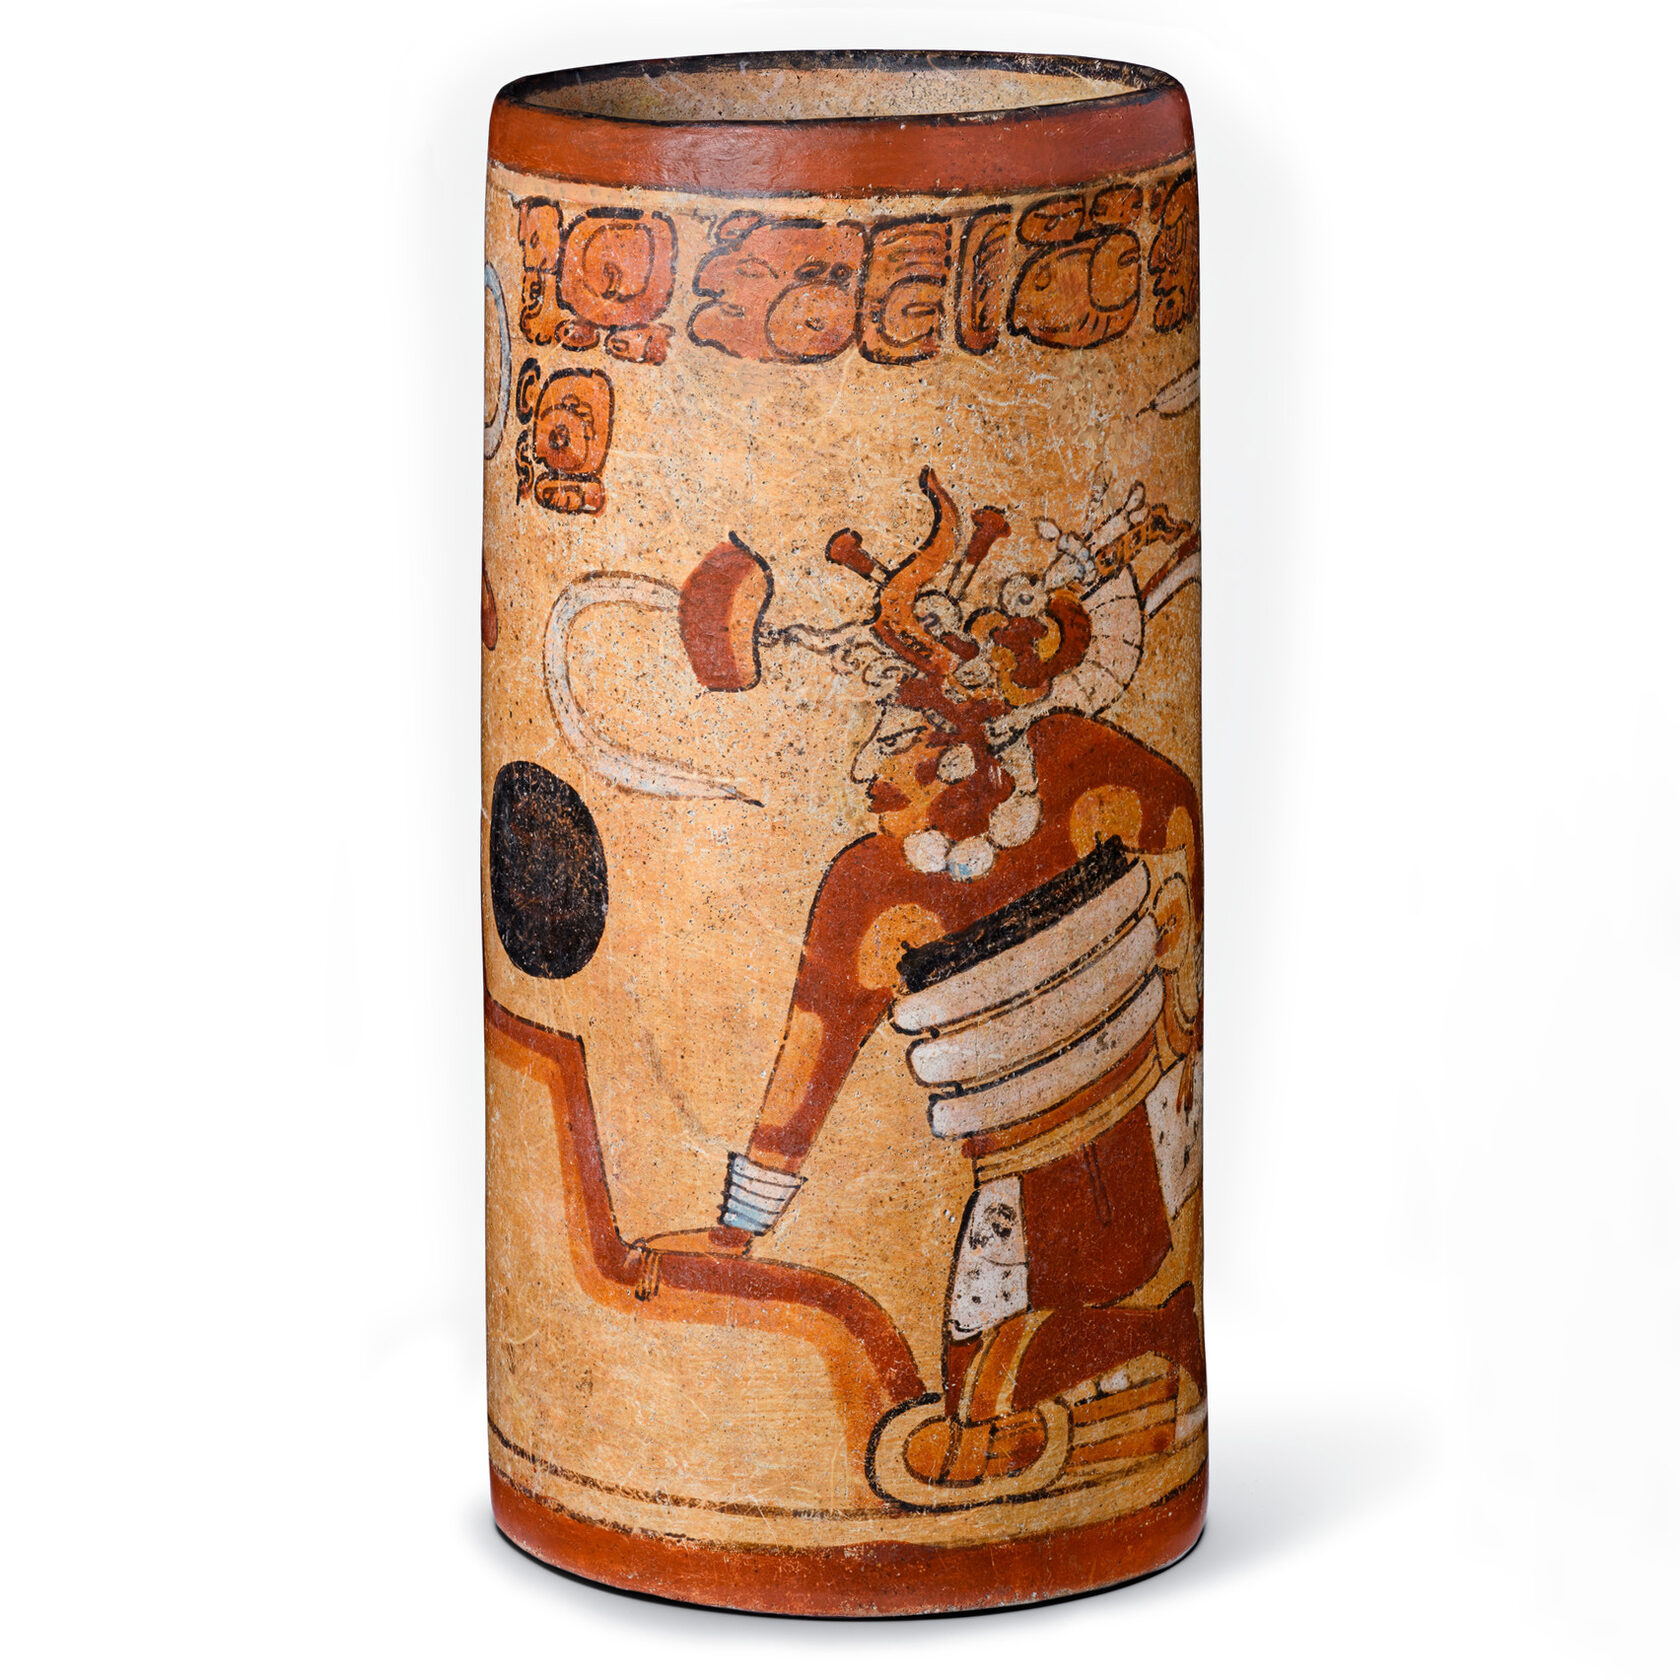 Цилиндрический сосуд со сценой игры в мяч. Майя, 600-900 гг. н.э. Коллекция Los Angeles County Museum of Art.